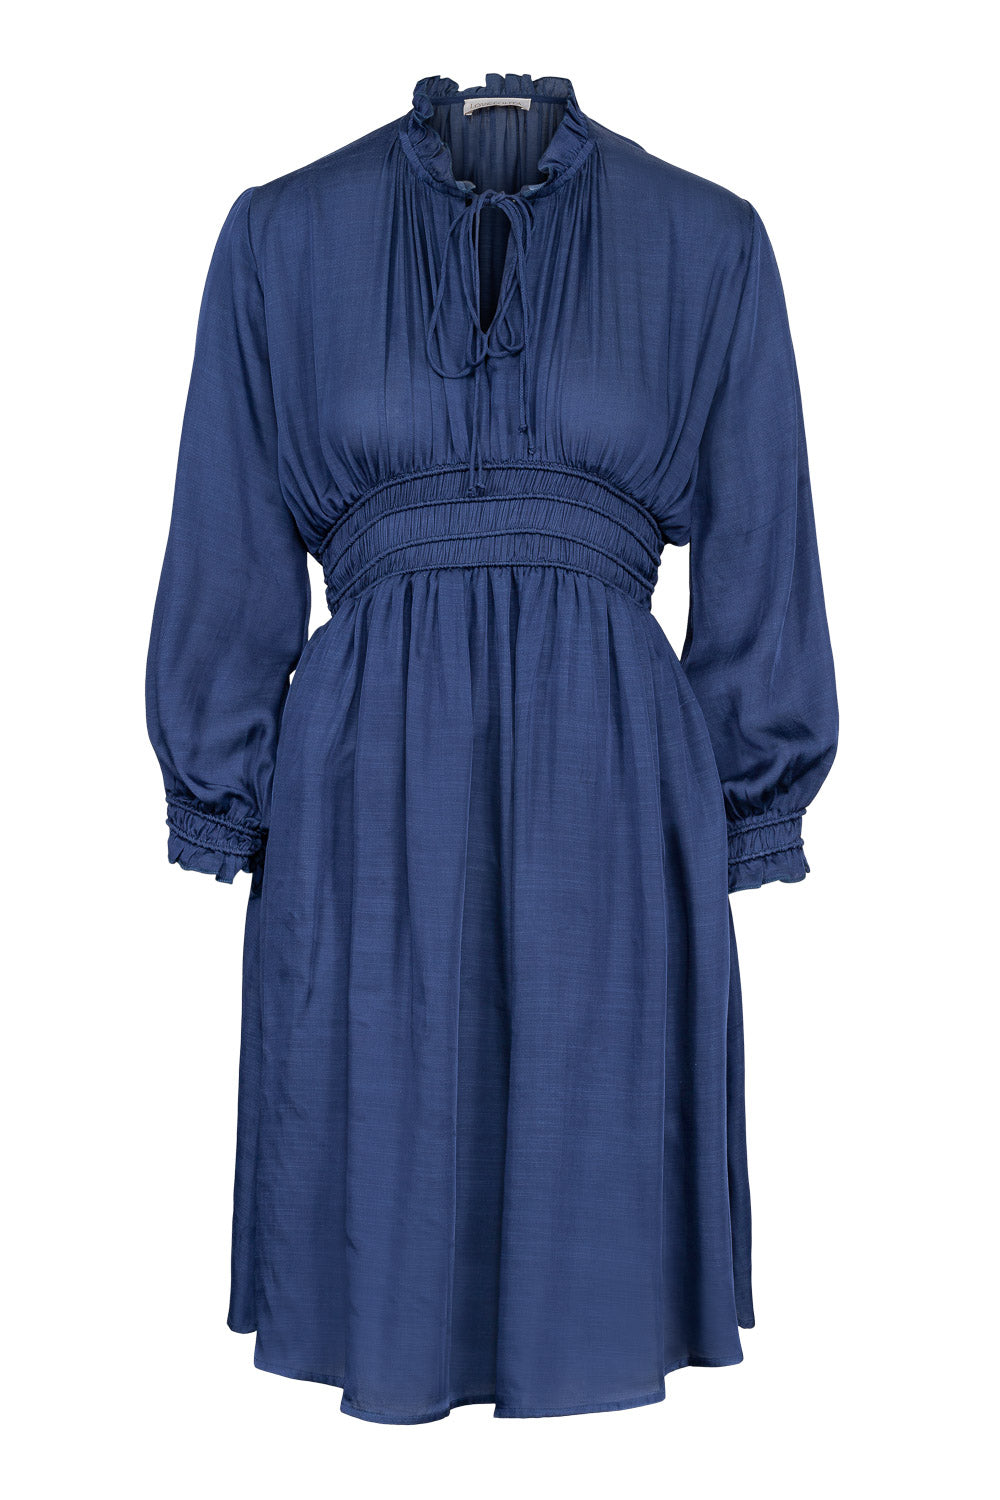 Billie Dress Bleu Nuit